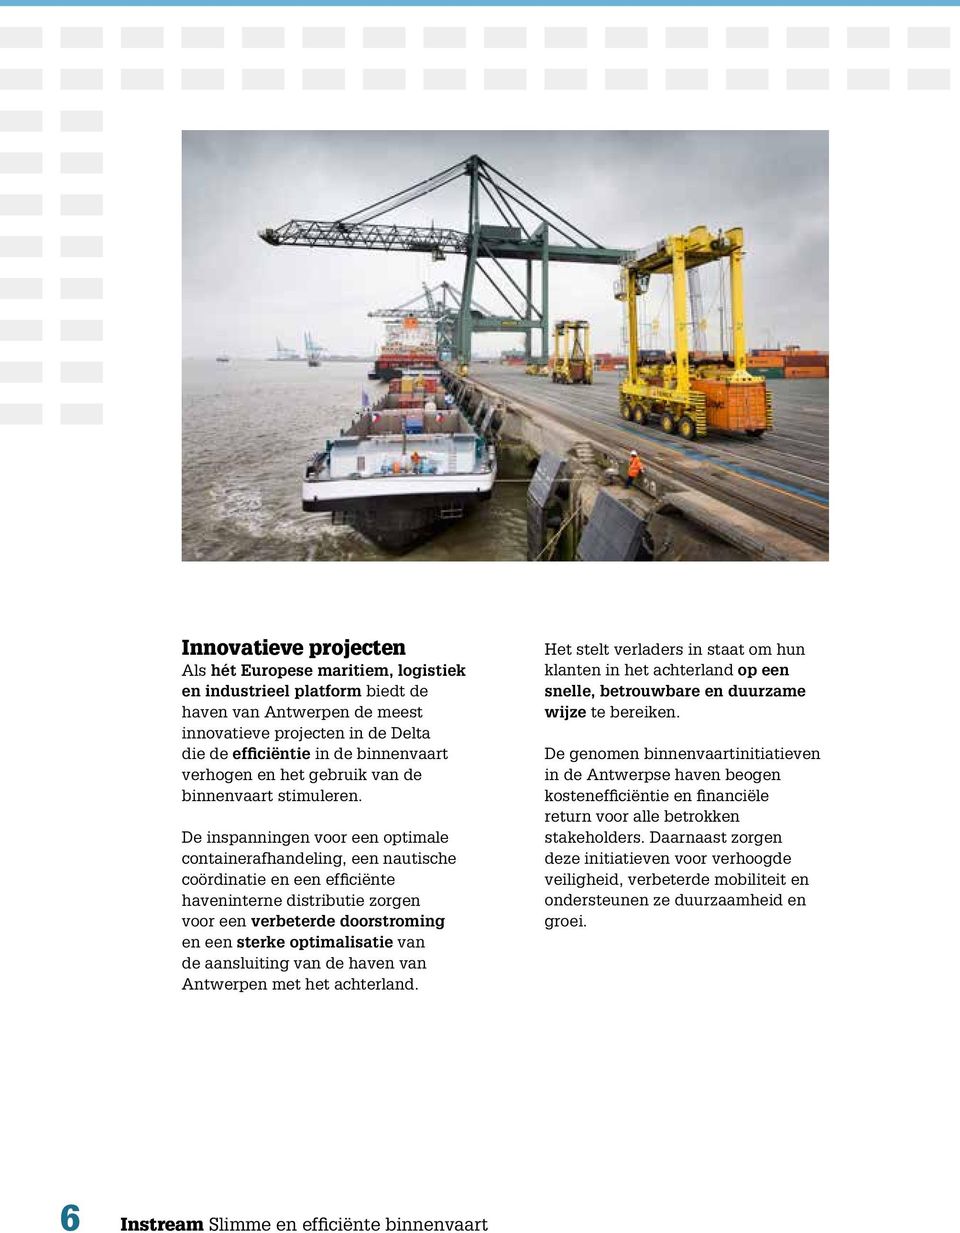 De inspanningen voor een optimale containerafhandeling, een nautische coördinatie en een efficiënte haveninterne distributie zorgen voor een verbeterde doorstroming en een sterke optimalisatie van de